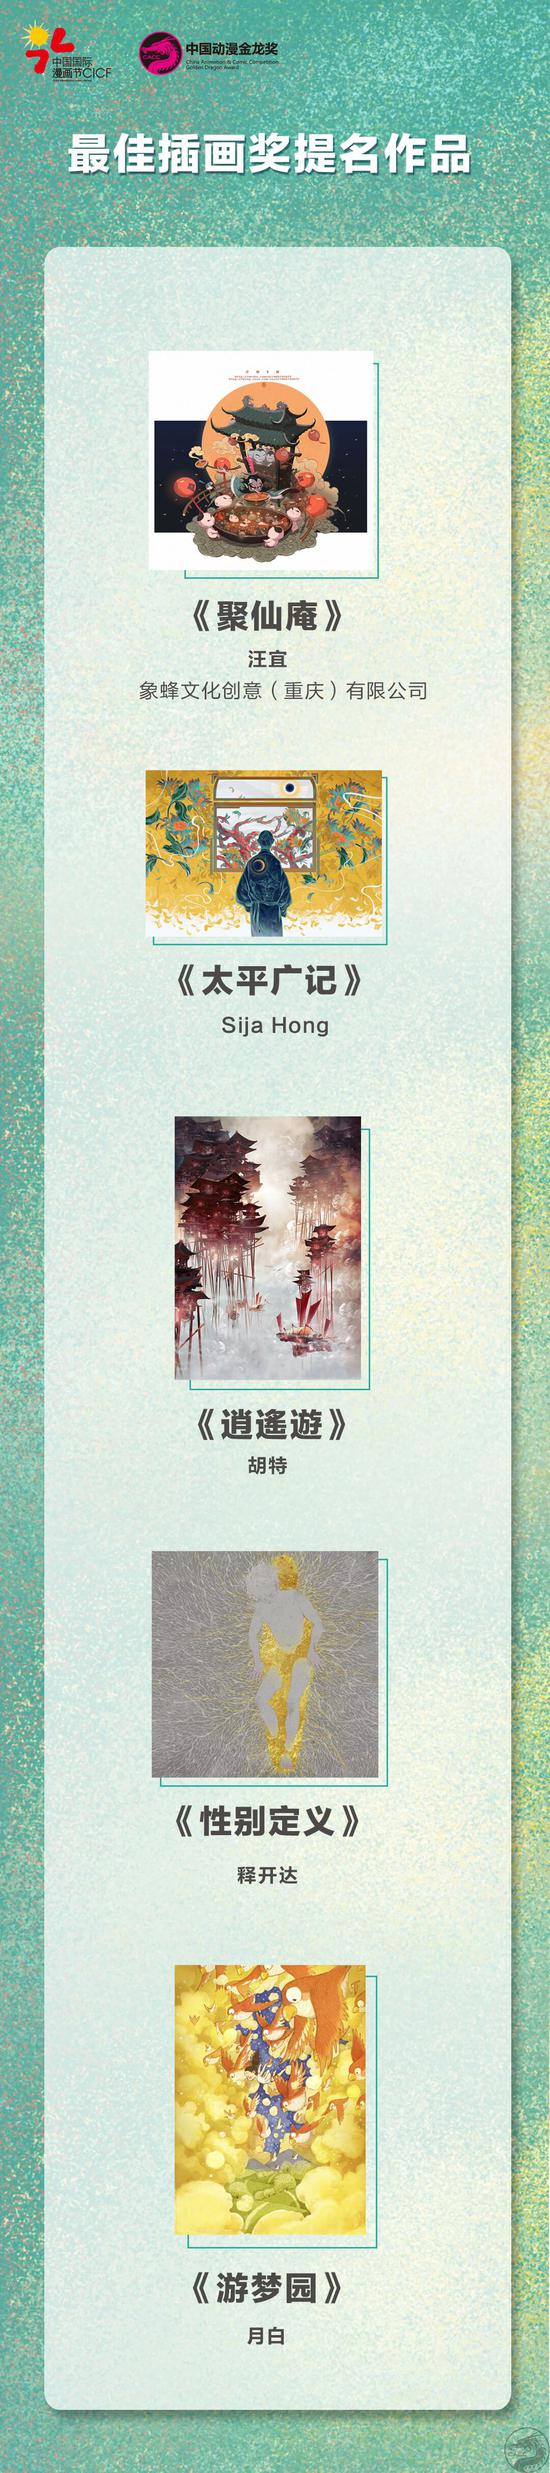 中国动漫金龙奖（CACC）最佳插画奖提名作品.jpg